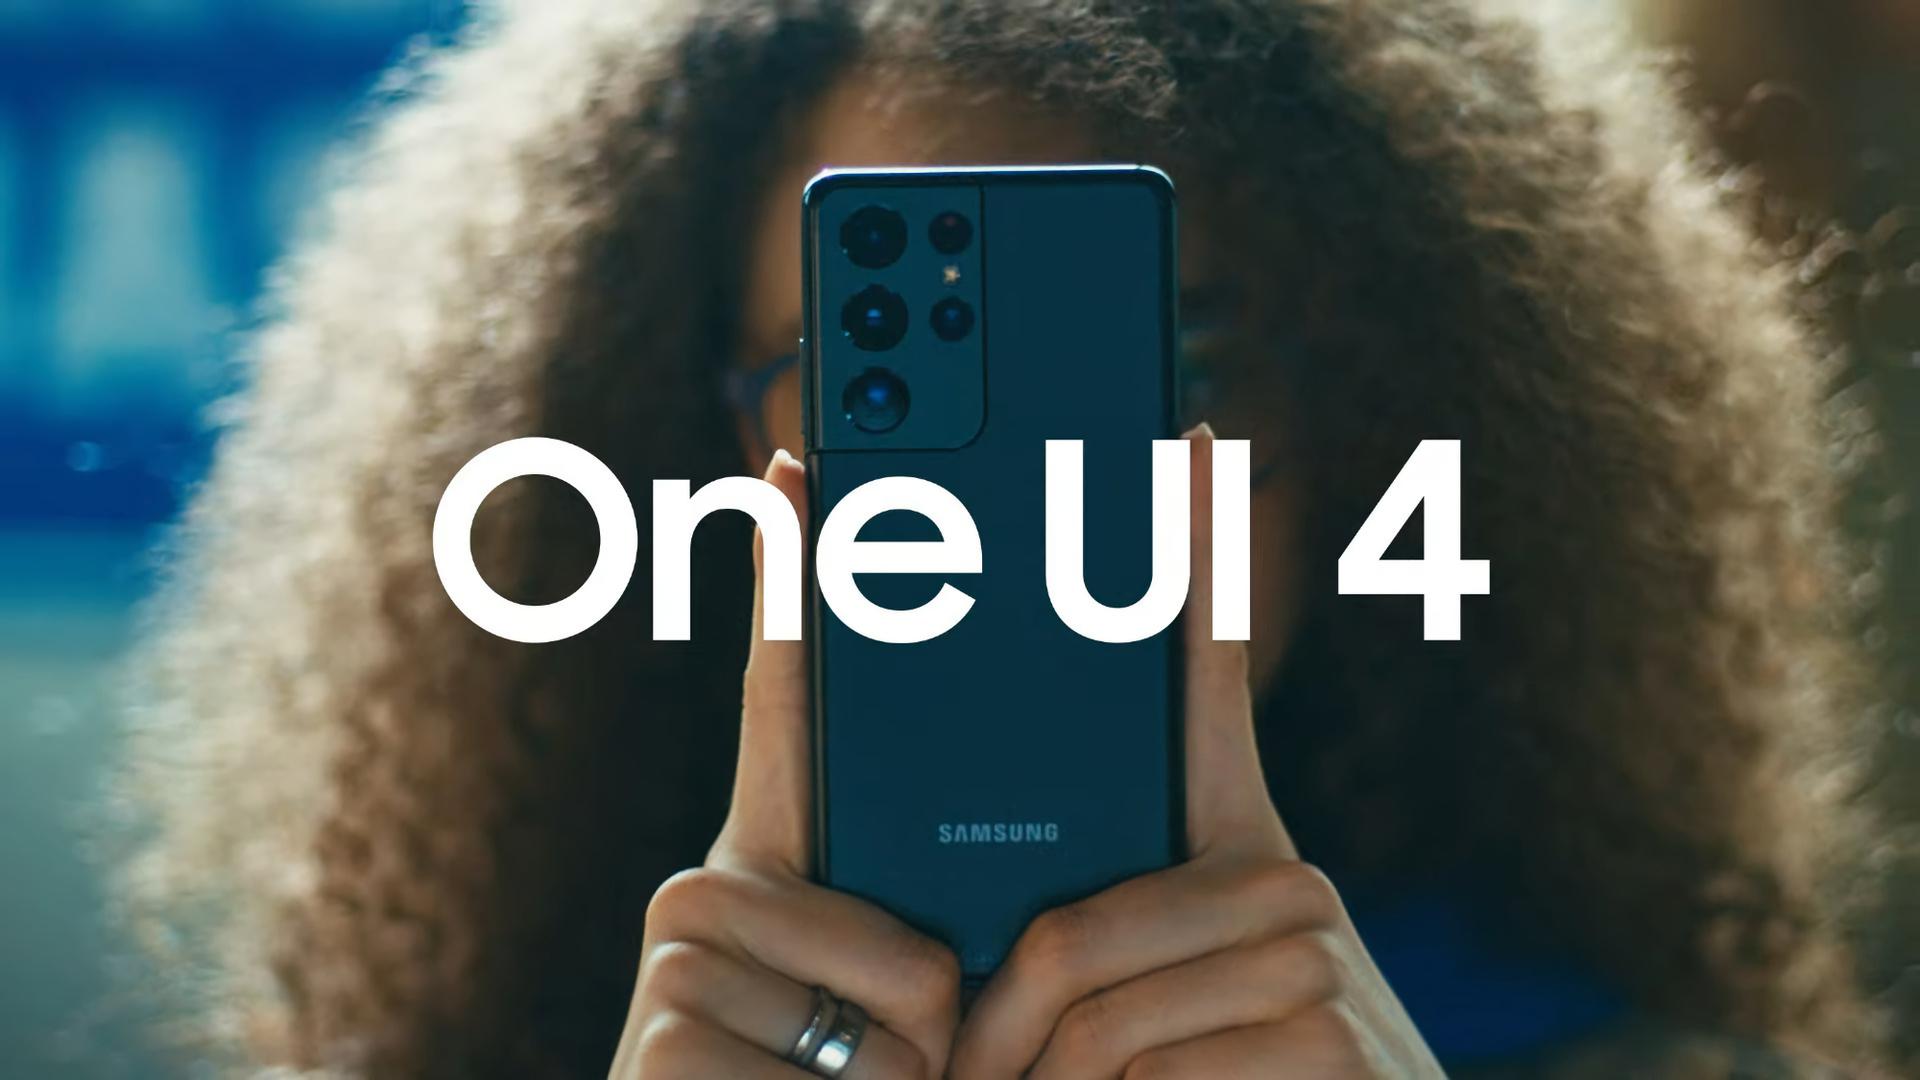 Samsung zeigt Details zu One UI 4 in einem offiziellen Video